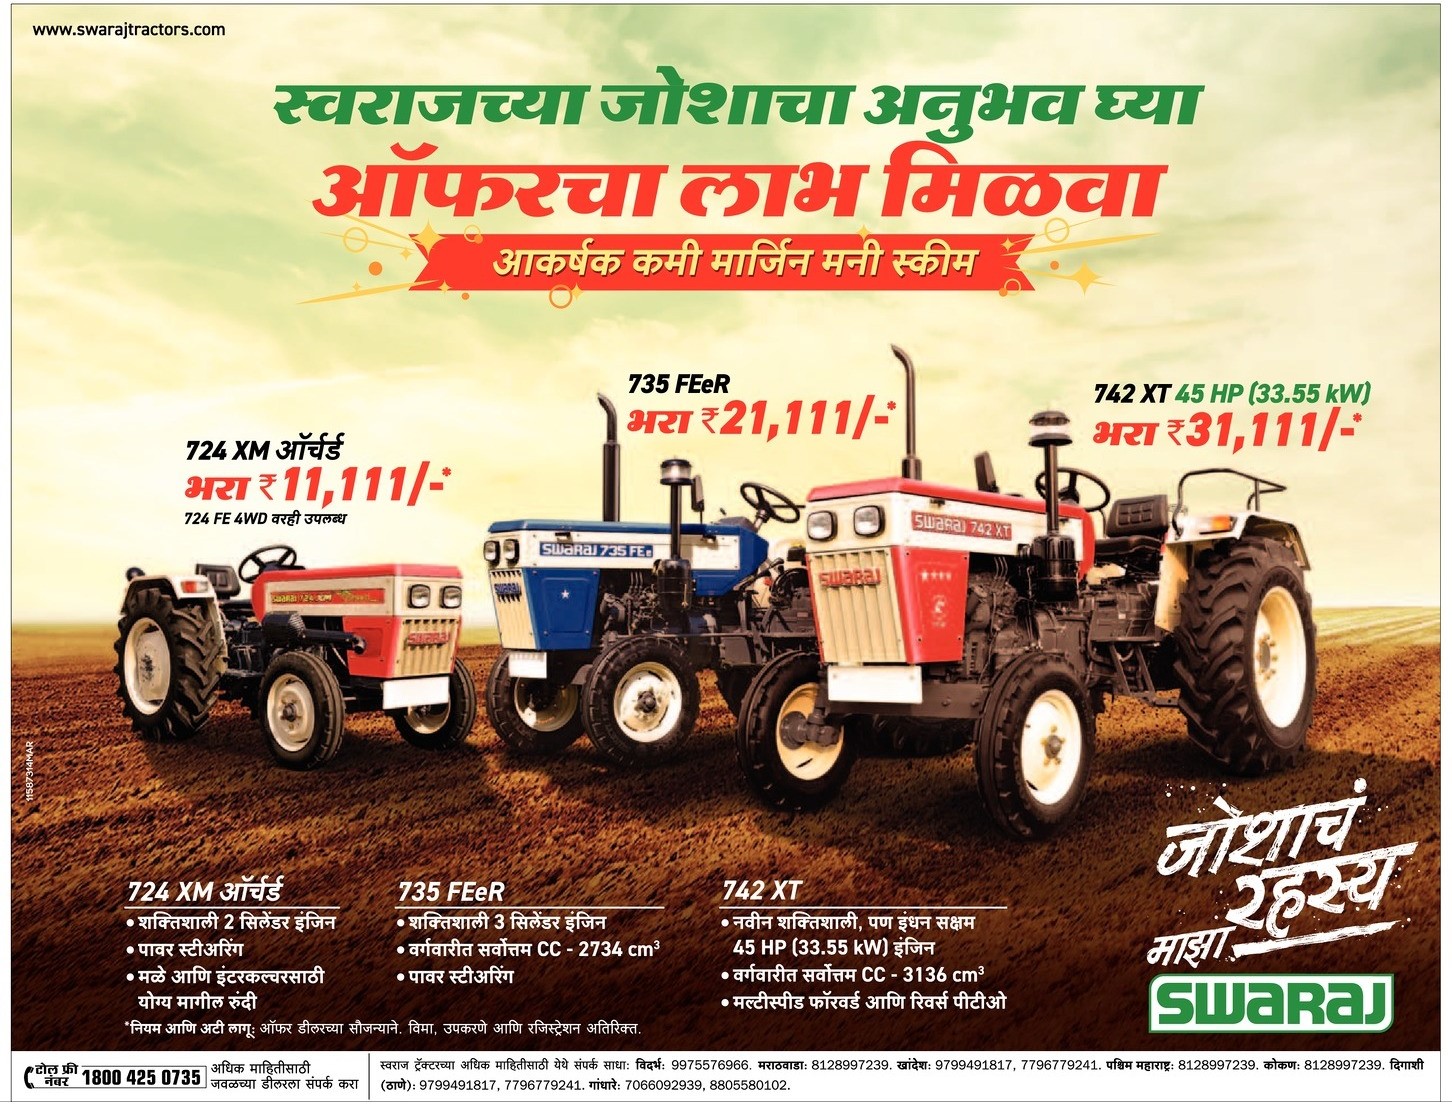 swaraj-tractors-724-xm-735-feer-742-xt-ad-lokmat-mumbai-18-06-2021